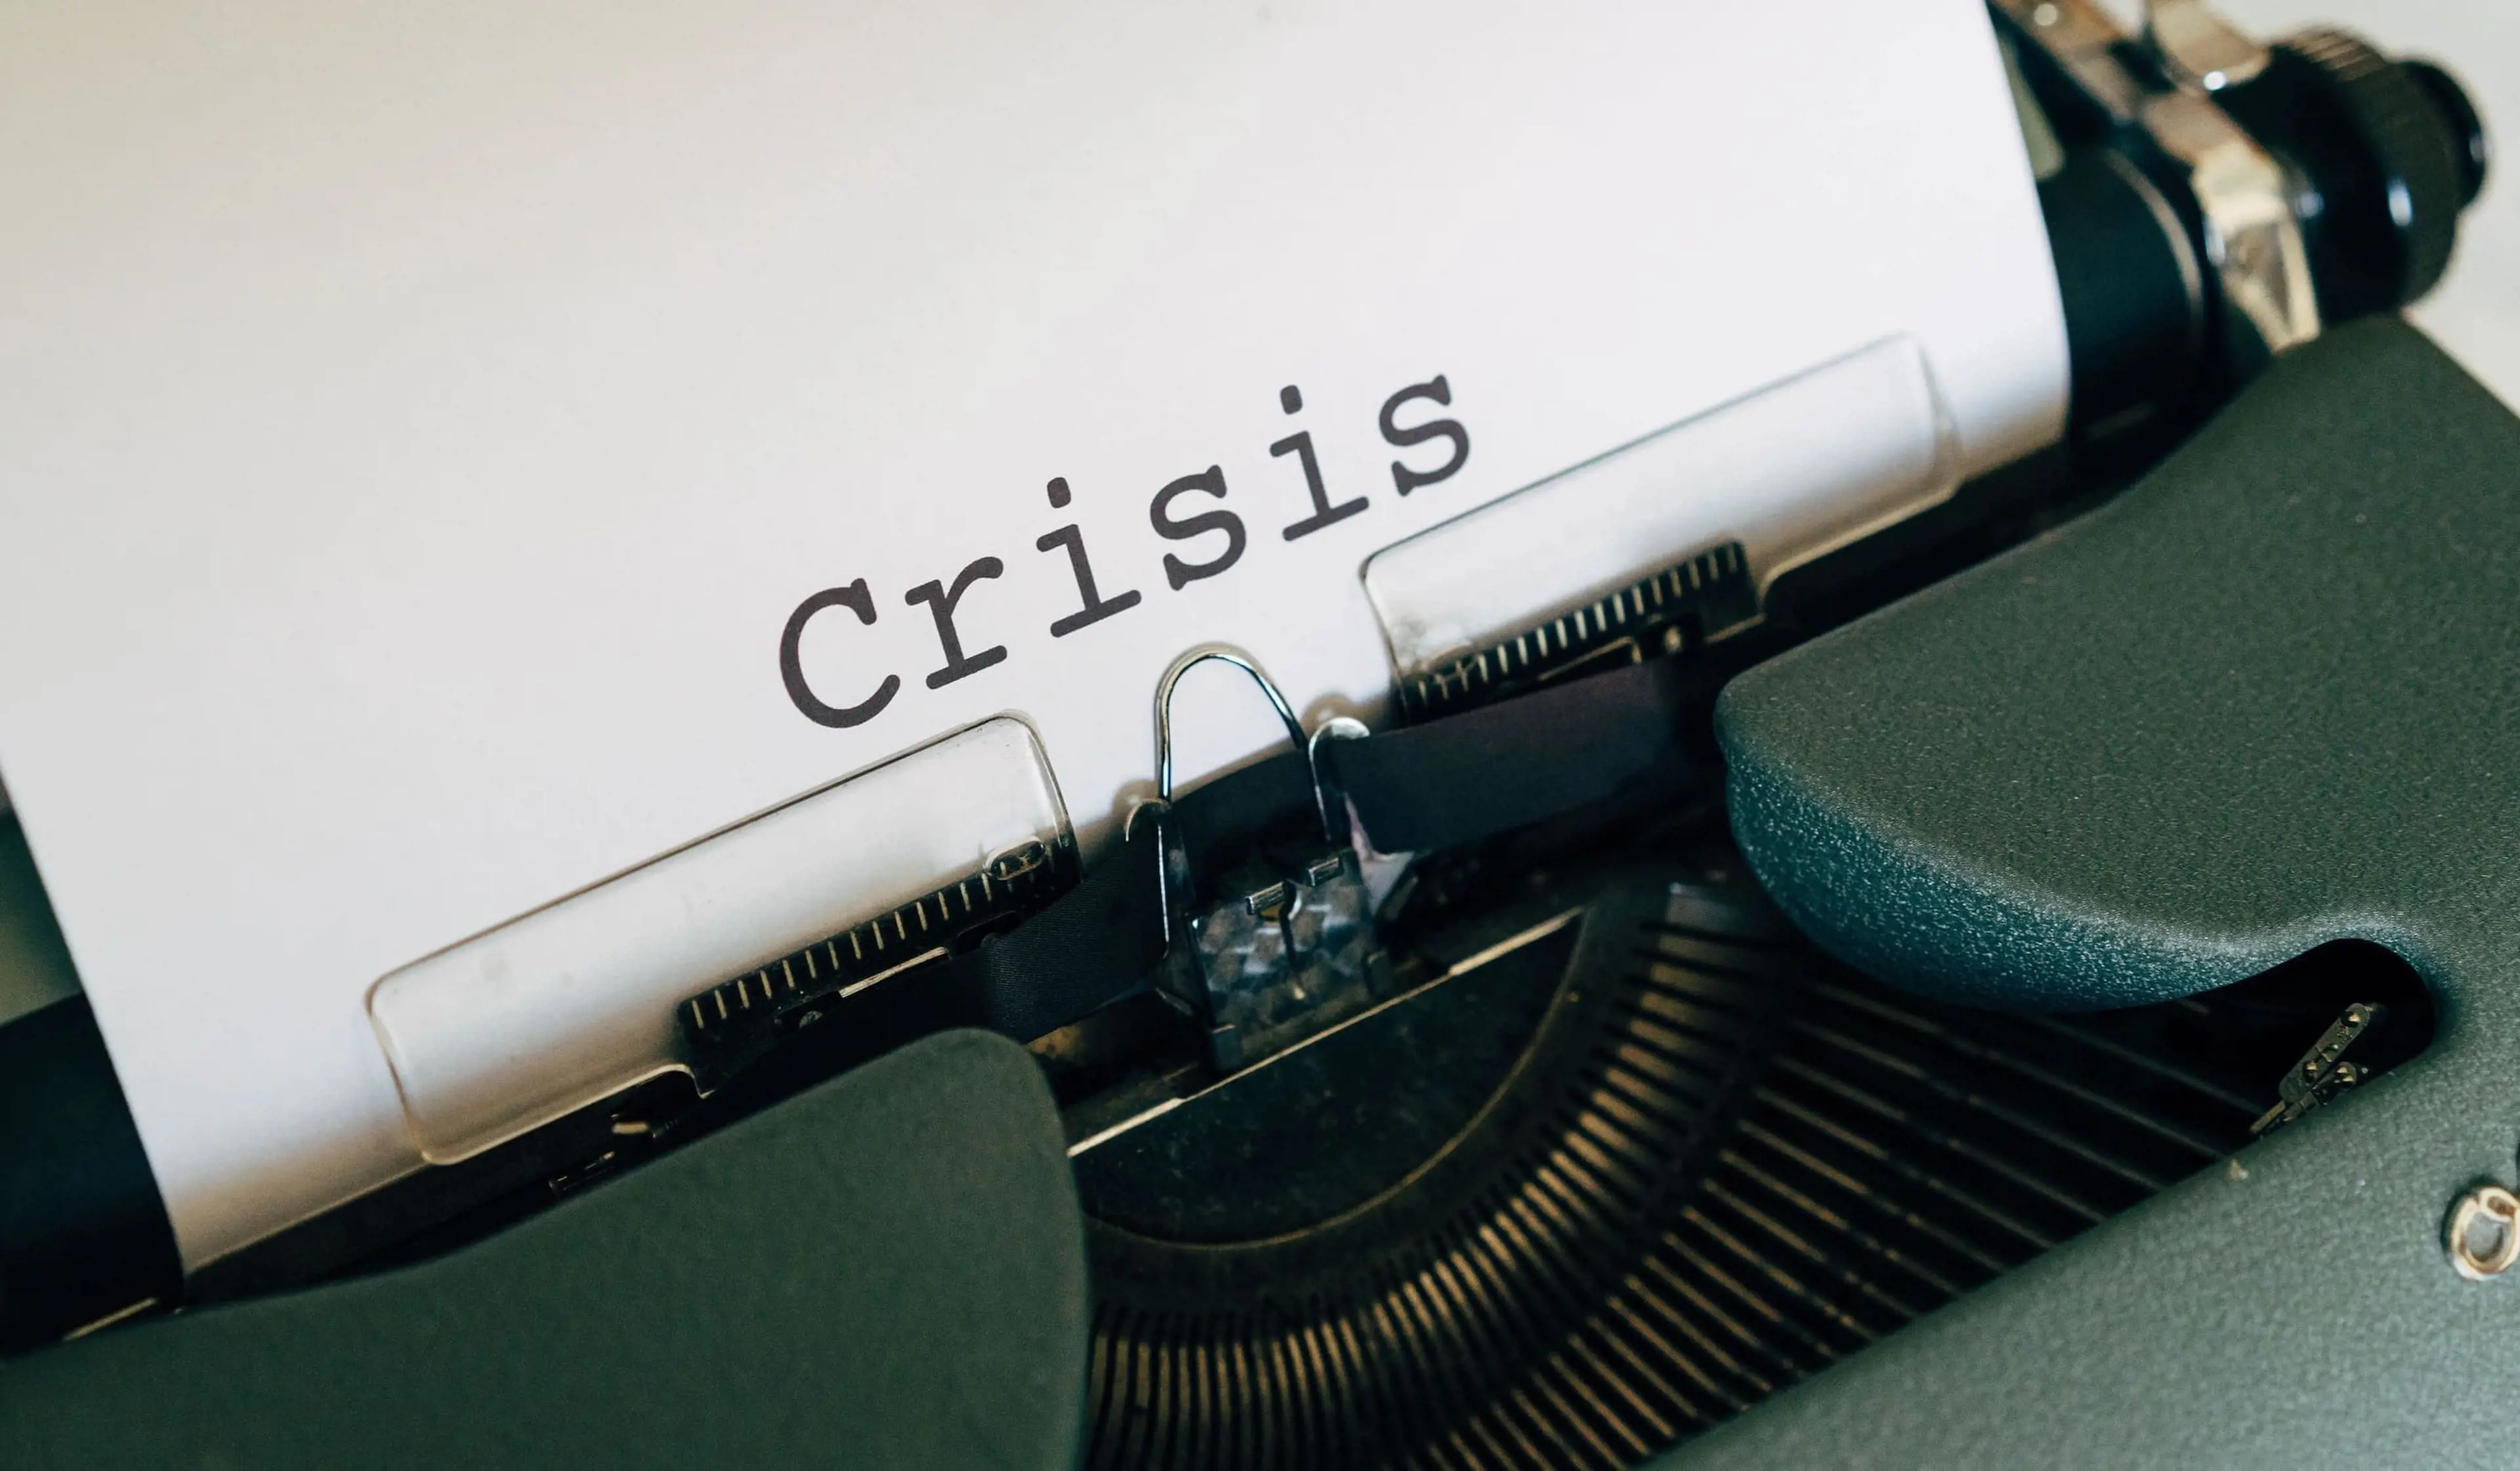 Hvidt ark i en skrivemaskine med ordet "Crisis" skrevet på.